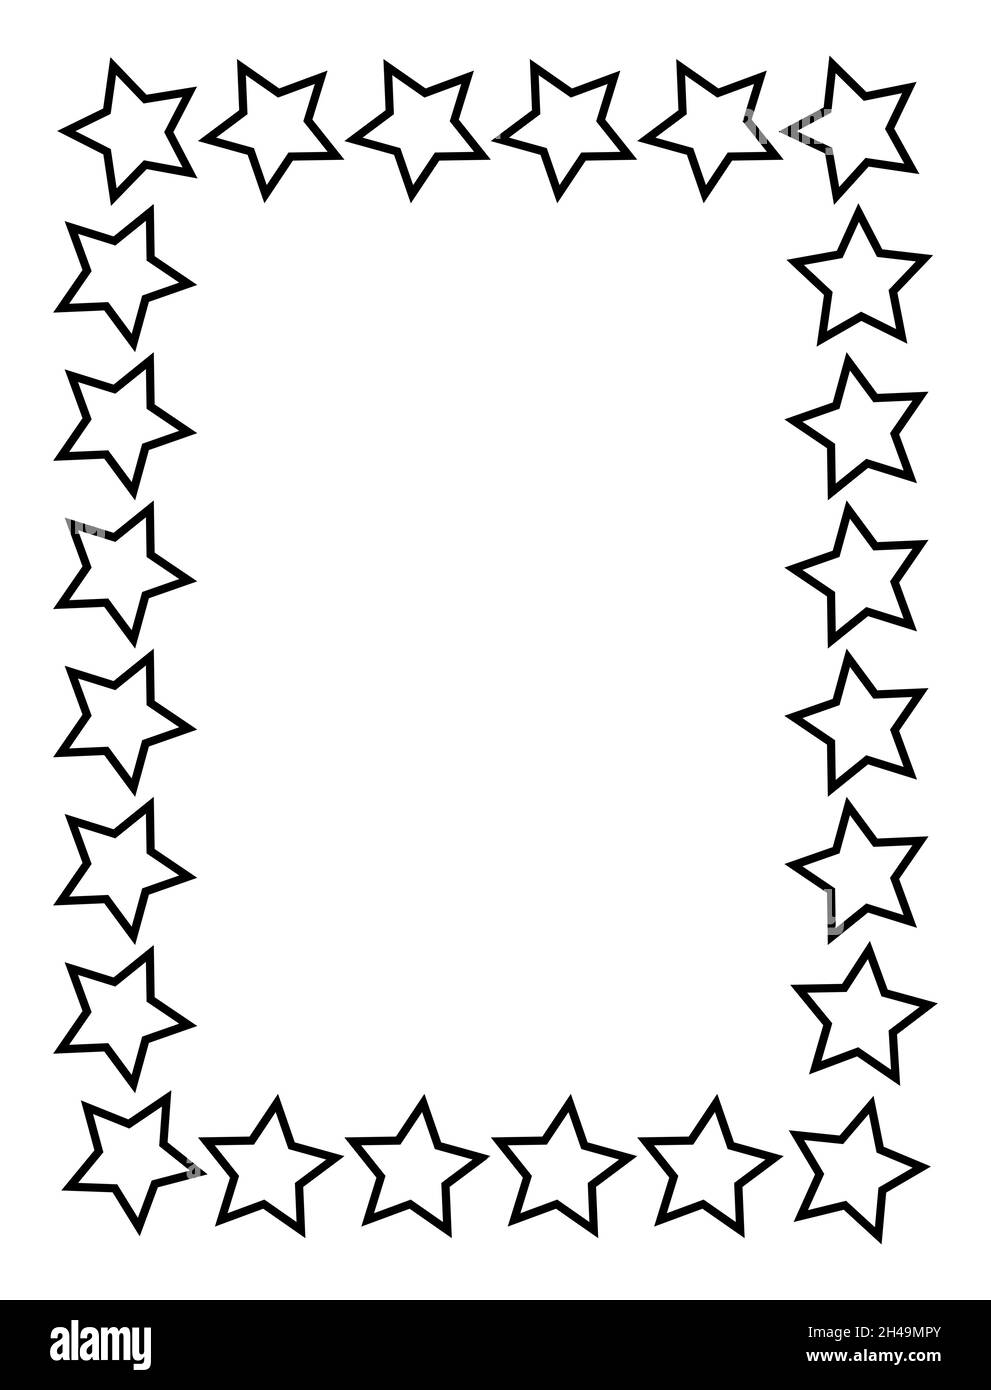 cornice rettangolare nera. Formato A4. Illustrazione vettoriale